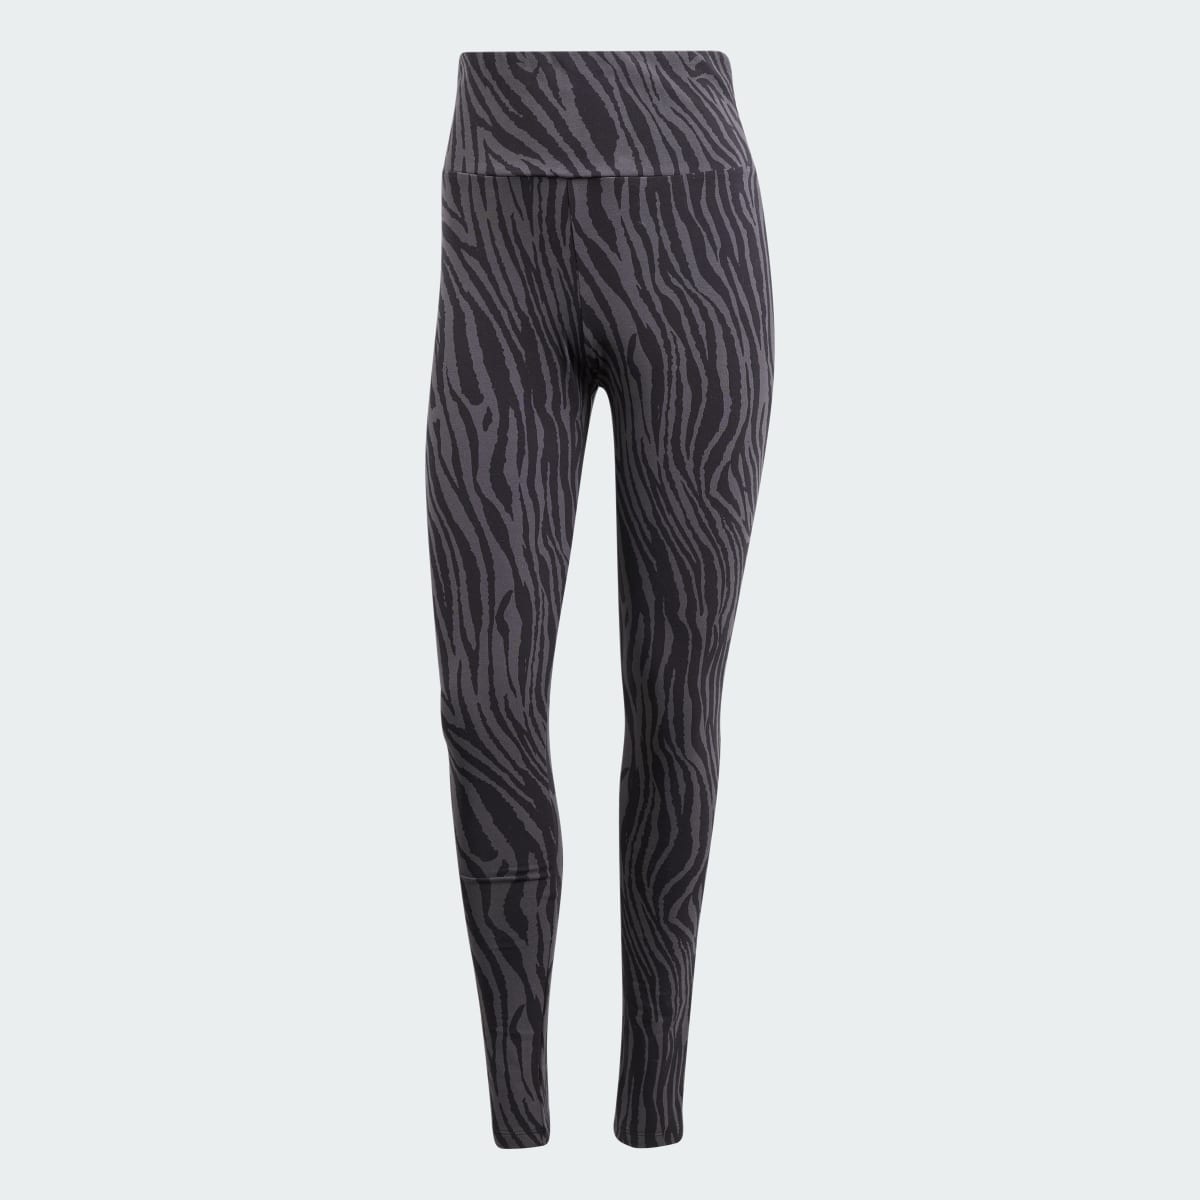 Adidas Allover Zebra Animal Print Essentials Leggings. 4